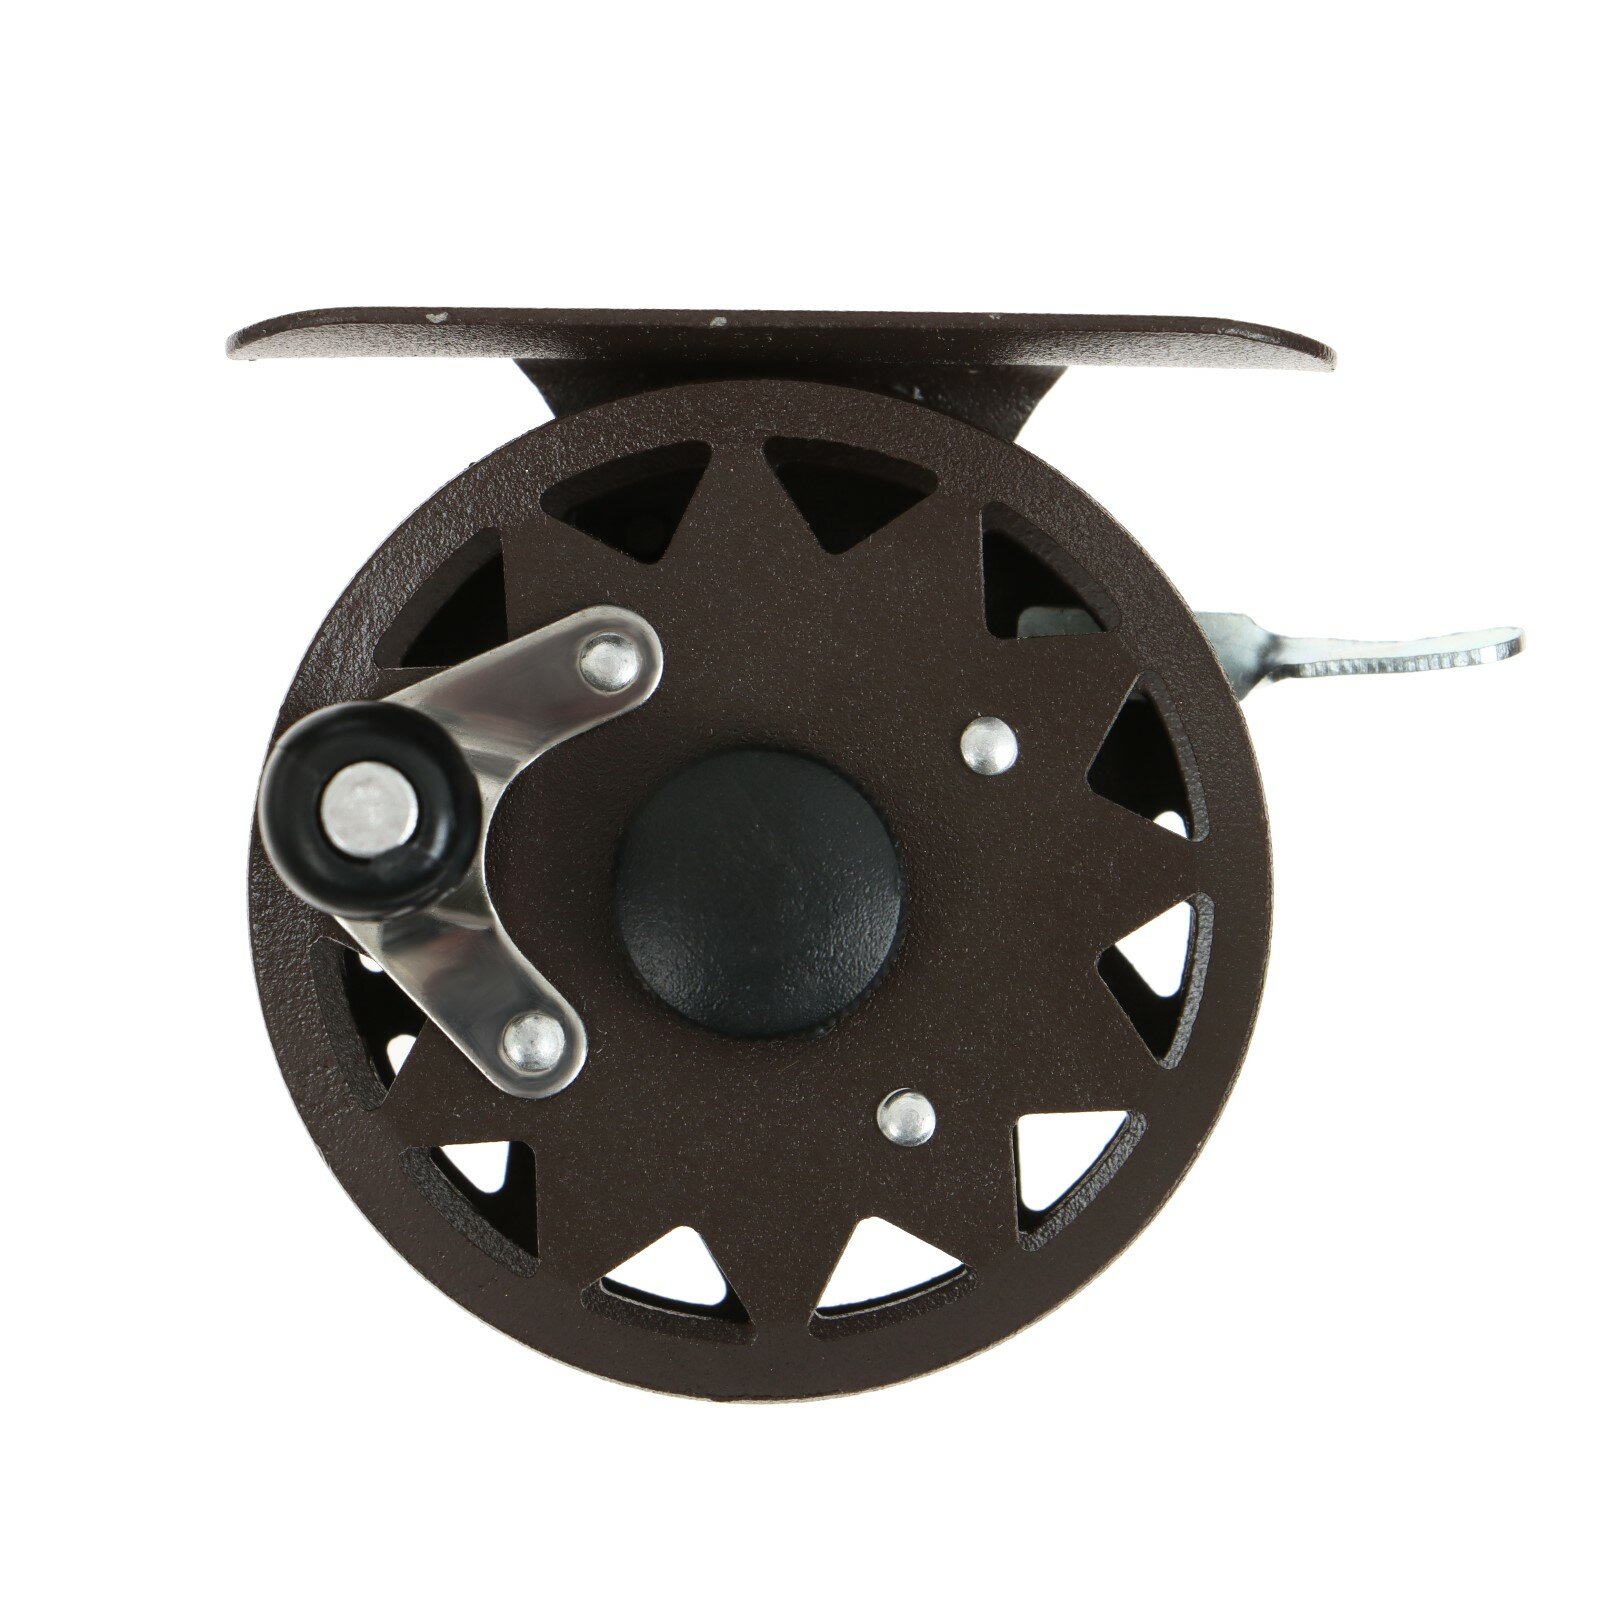 Катушка инерционная, металл, диаметр 5.5 см, цвет темно-коричневый, TL55 9913083